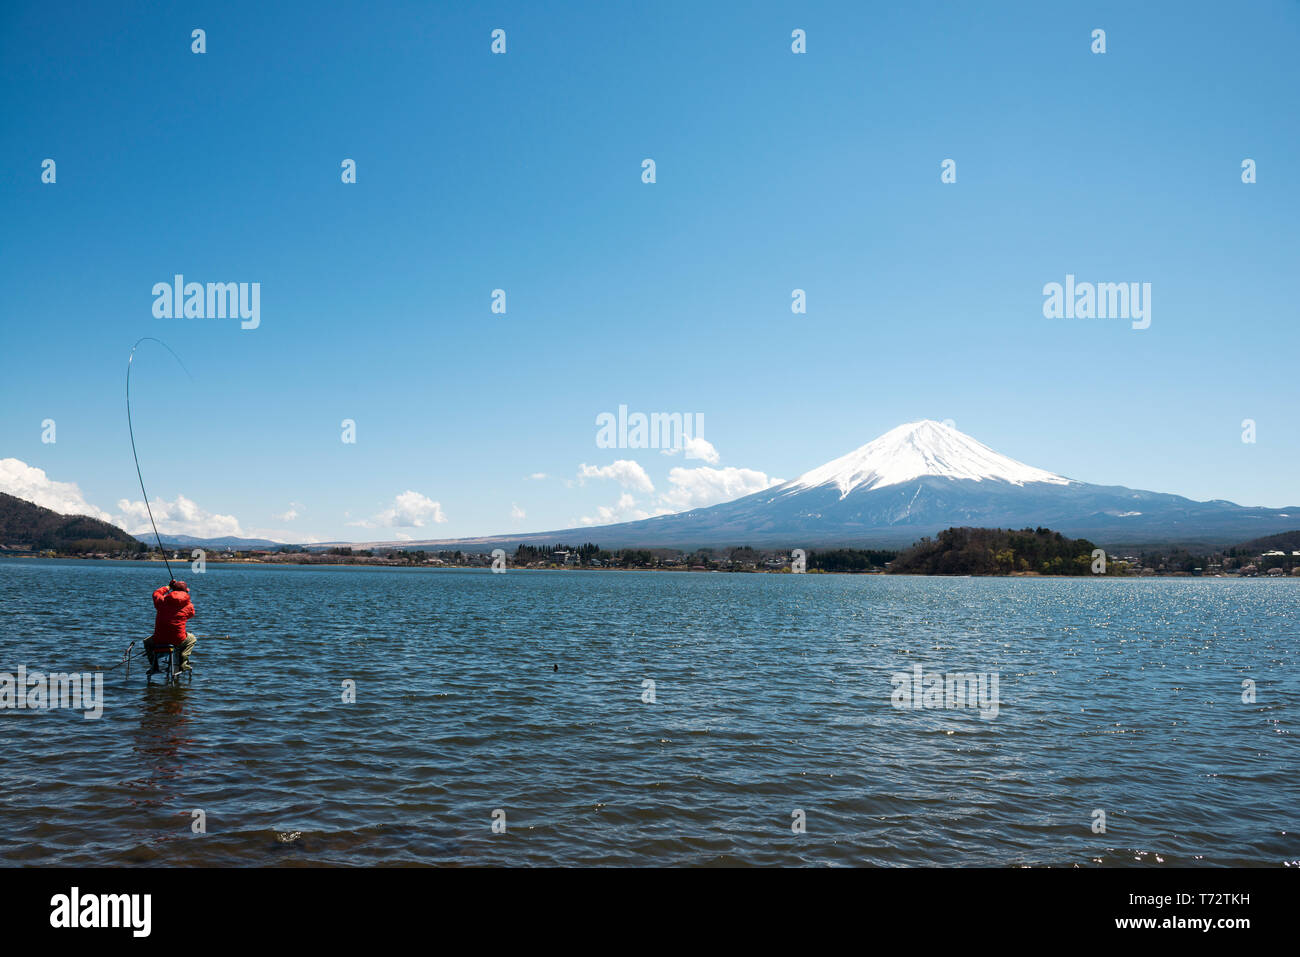 Pêcheur et Mt. Fuji du lac Kawaguchi, préfecture de Yamanashi, Japon Banque D'Images